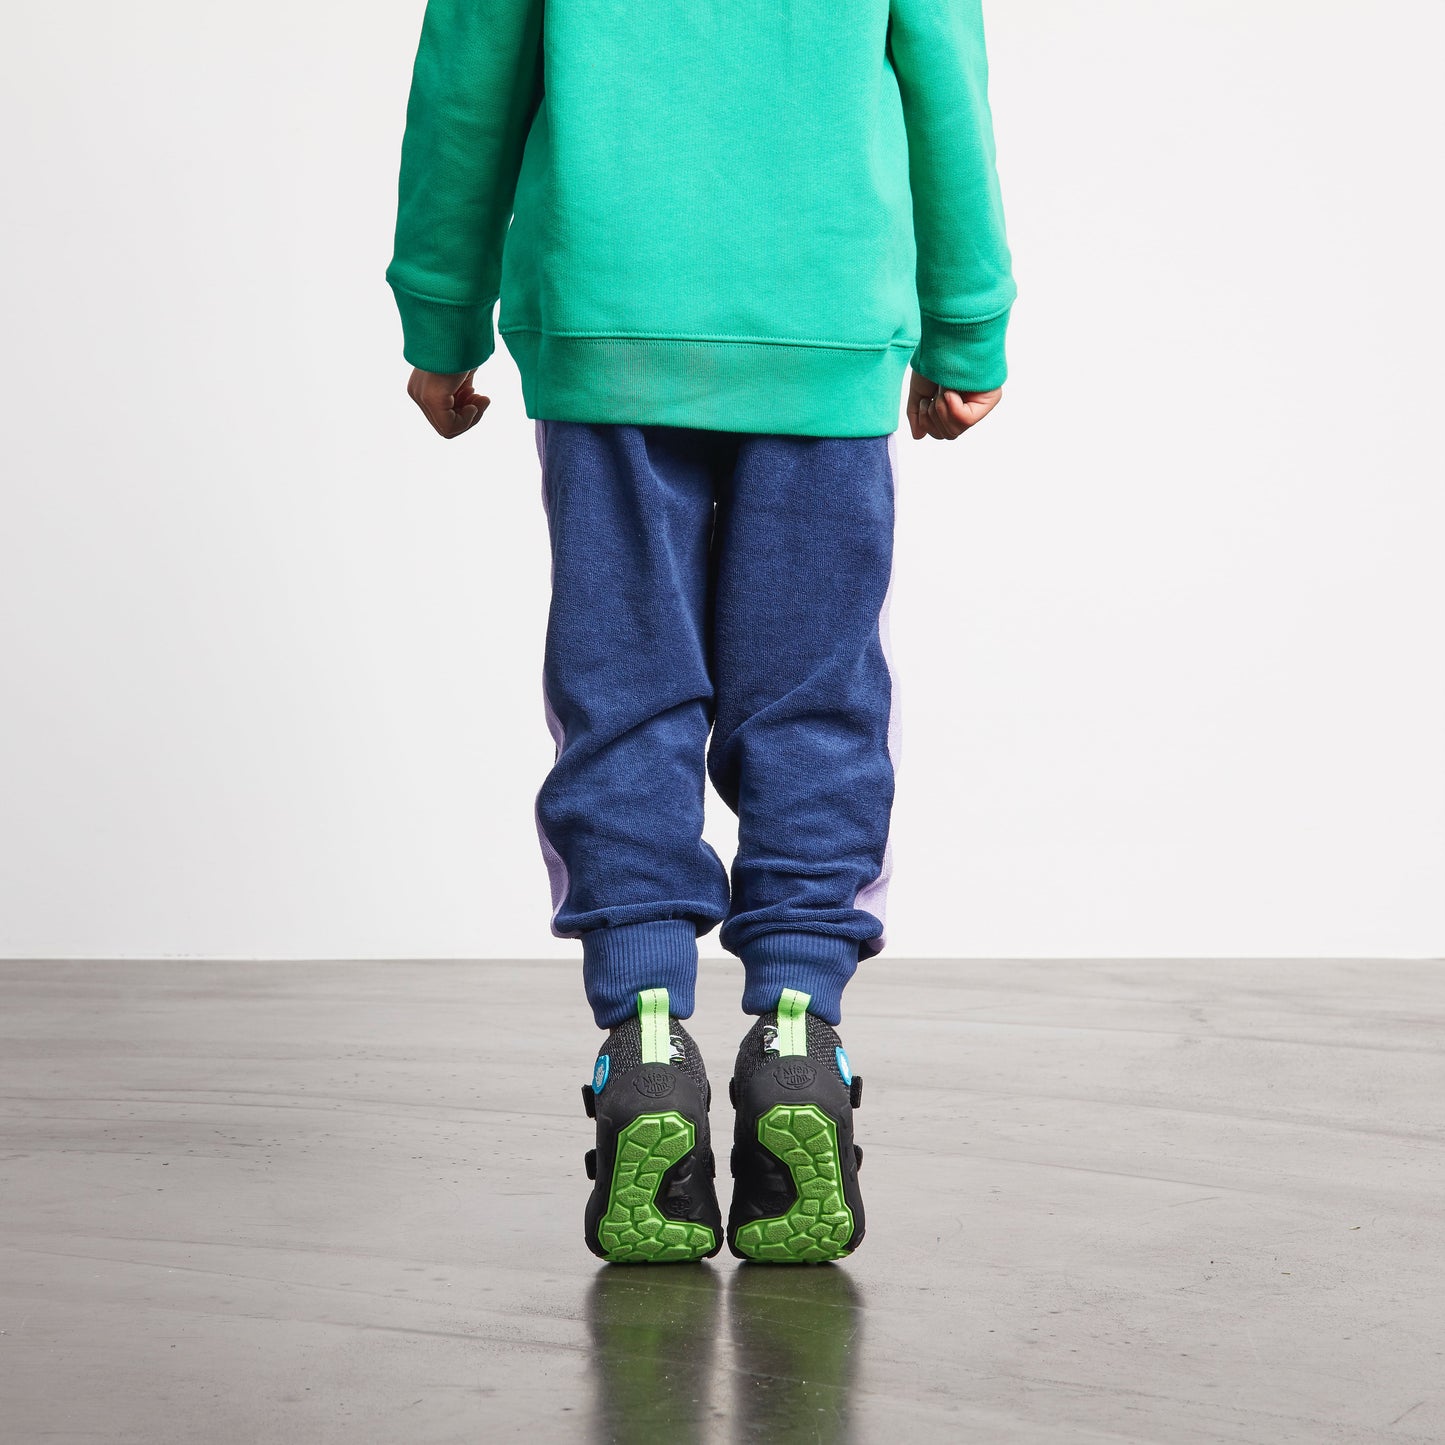 Affenzahn Low Boot Knit Happy barfods overgangssko til børn i farven panther, lifestyle